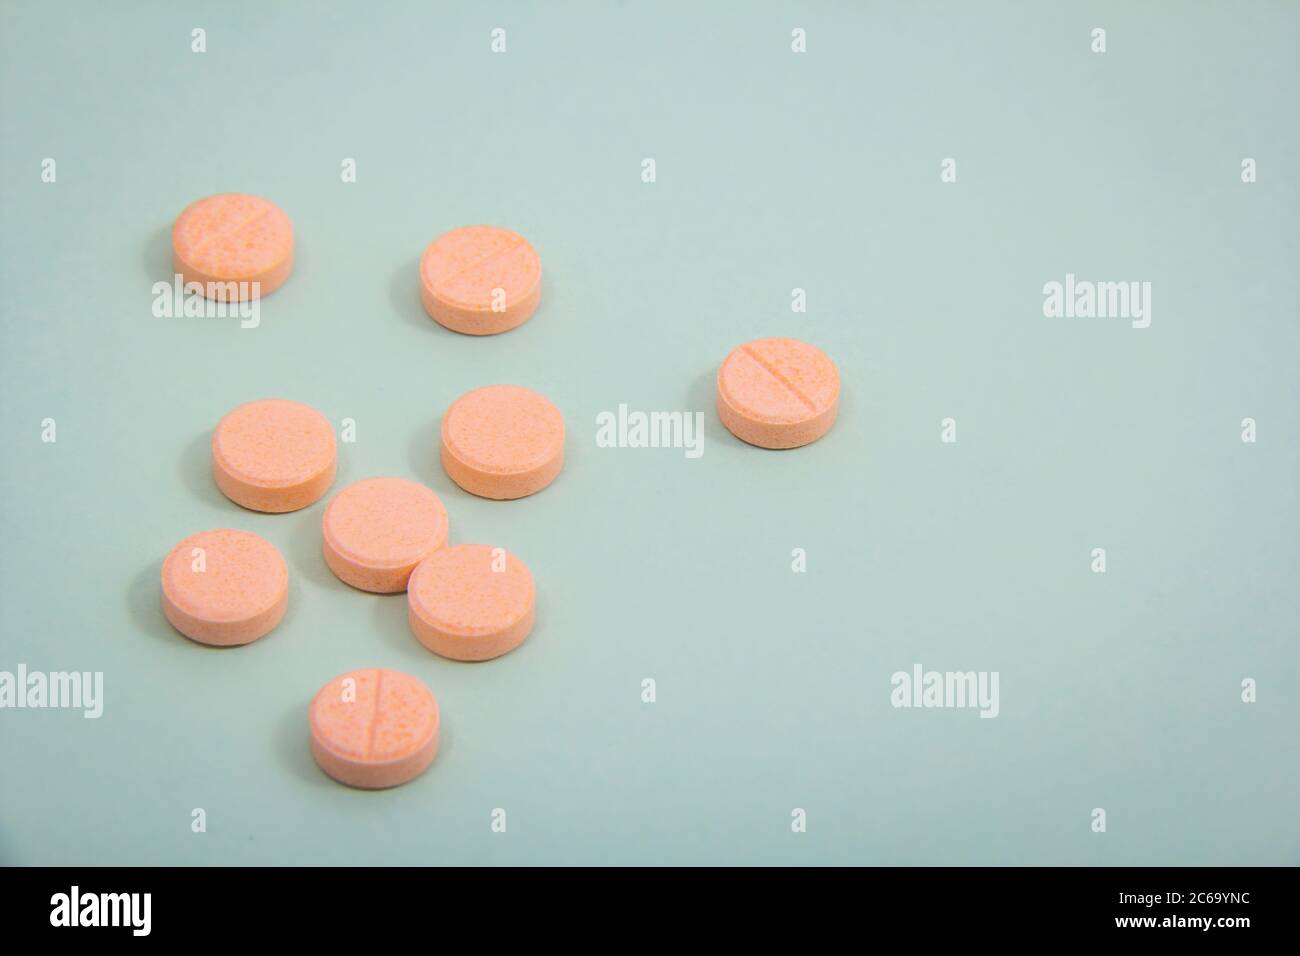 Farbige Tabletten aus der Verpackung. Farbige Pillen mit einem einfachen Hintergrund und verschiedenen Farben zusammen. Stockfoto